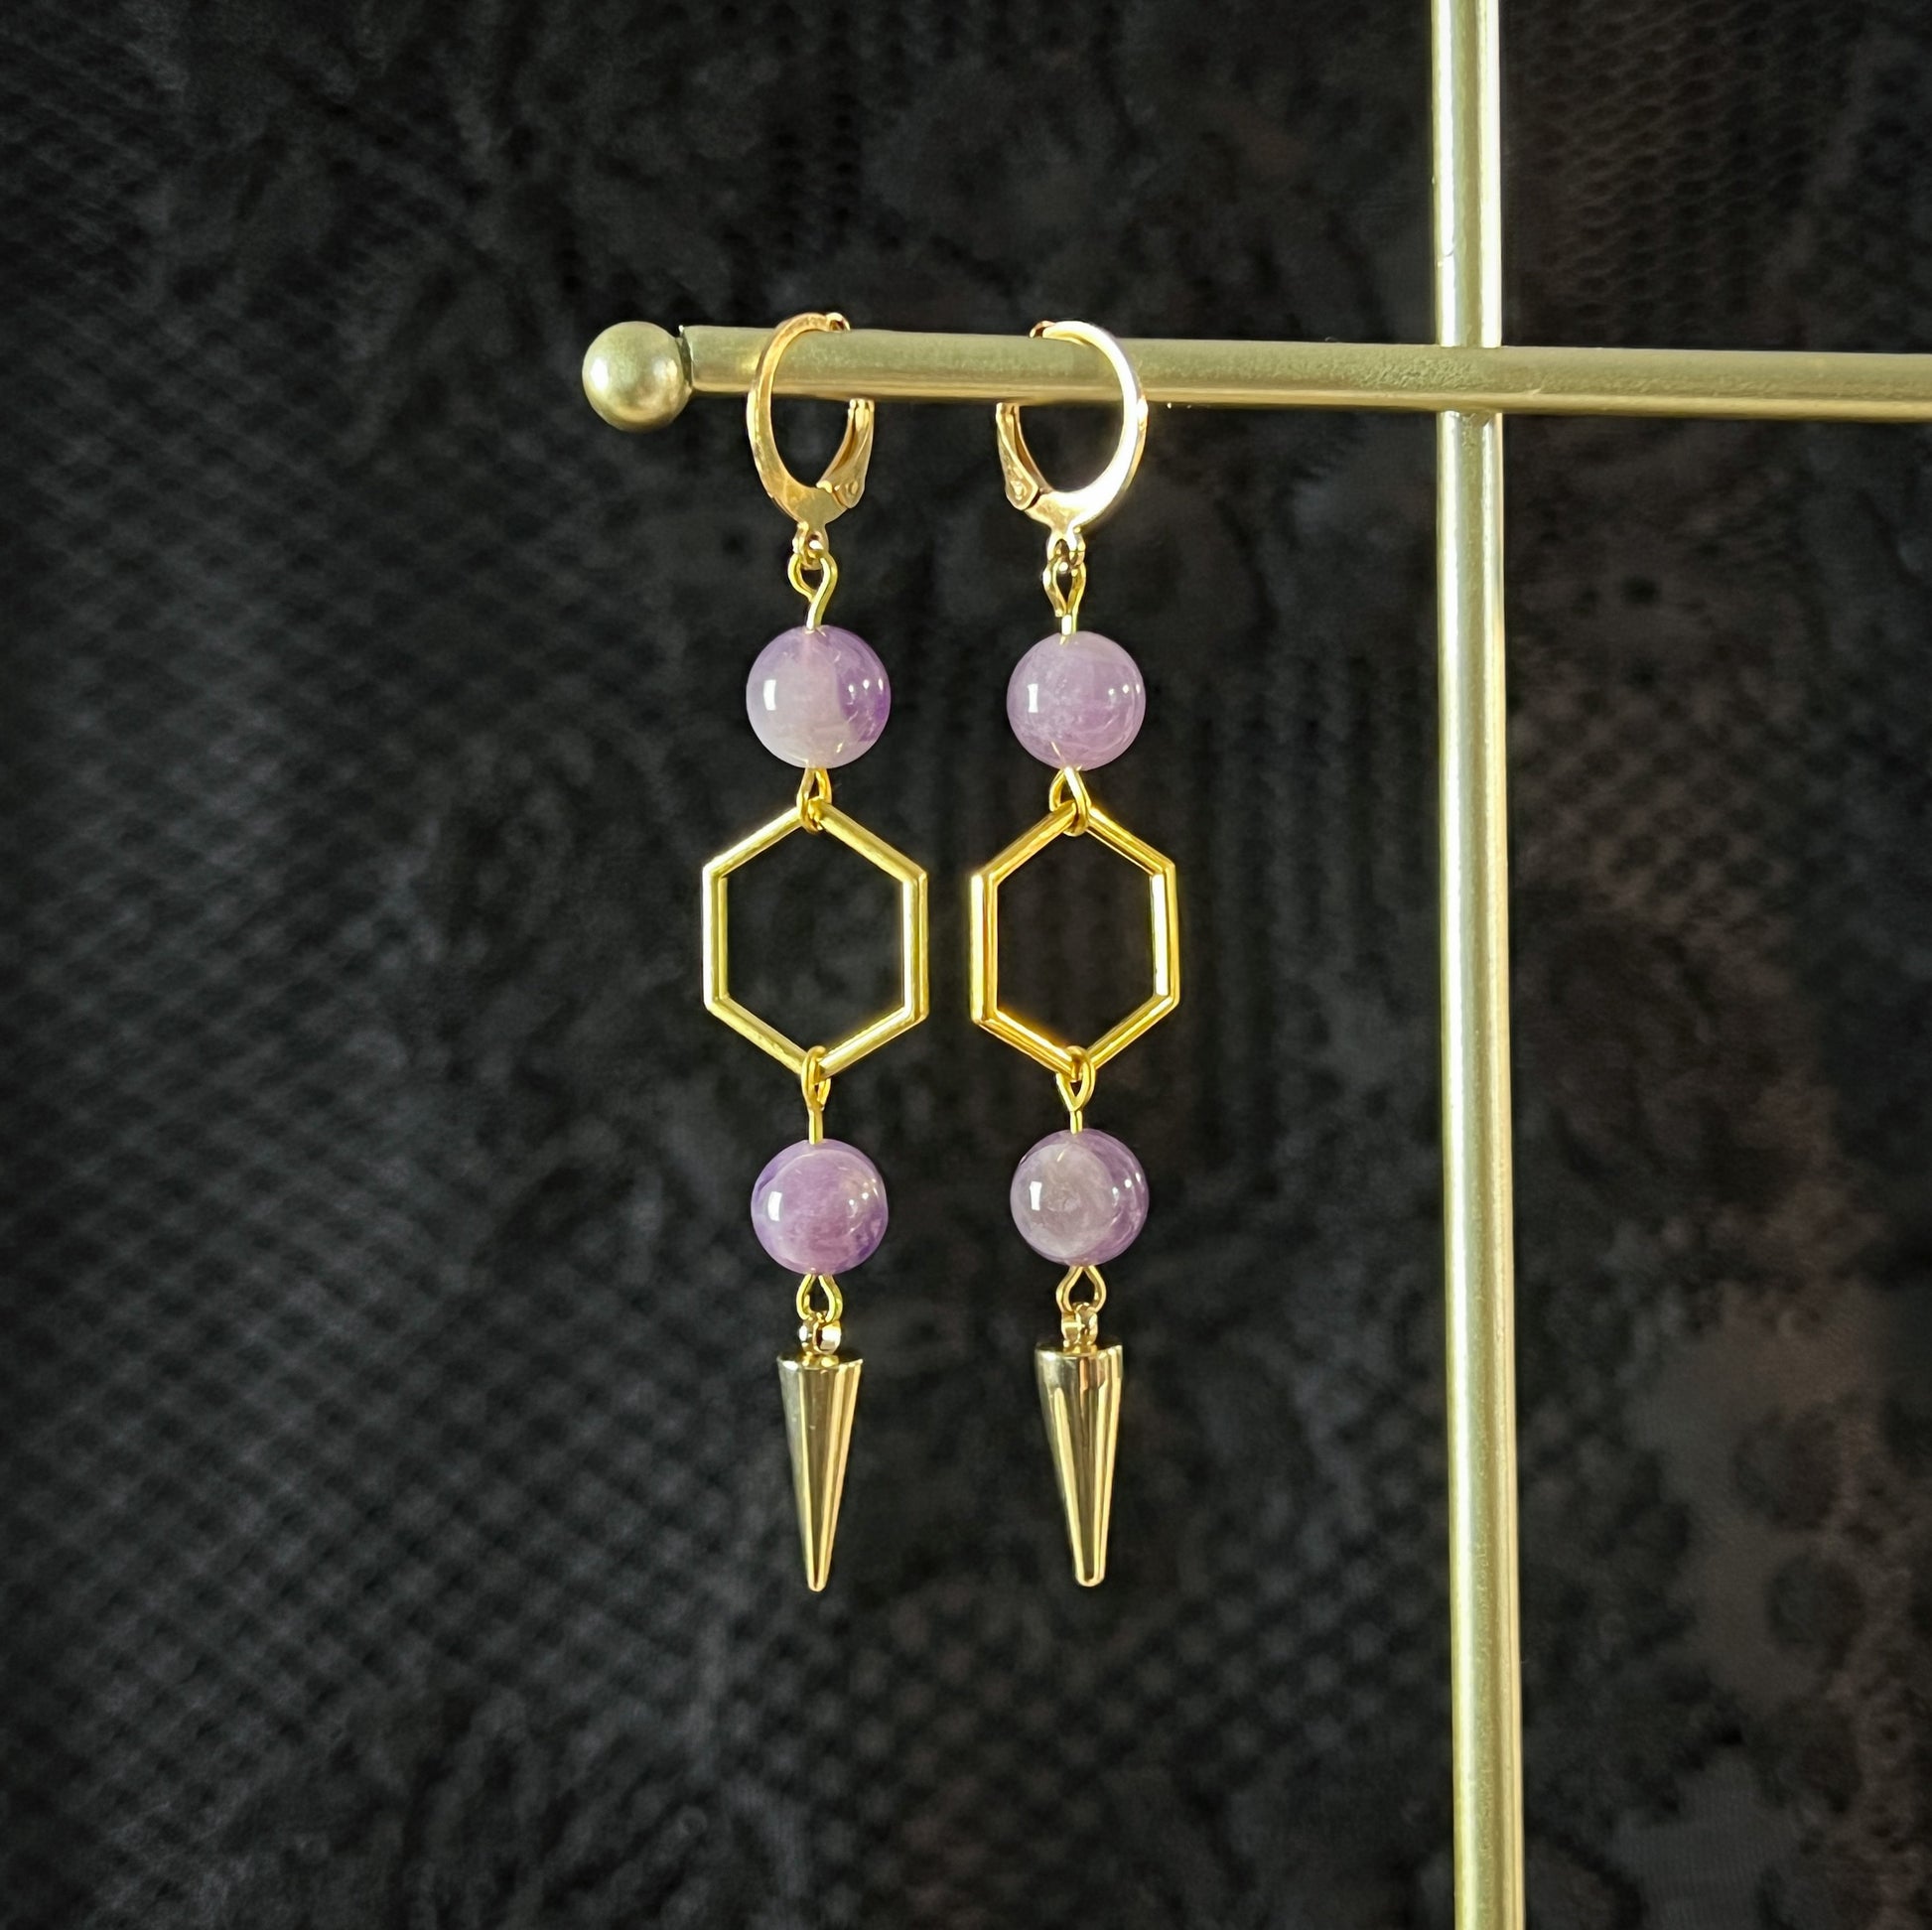 Geometric amethyst earrings amethyst jewelry minimalist earrings